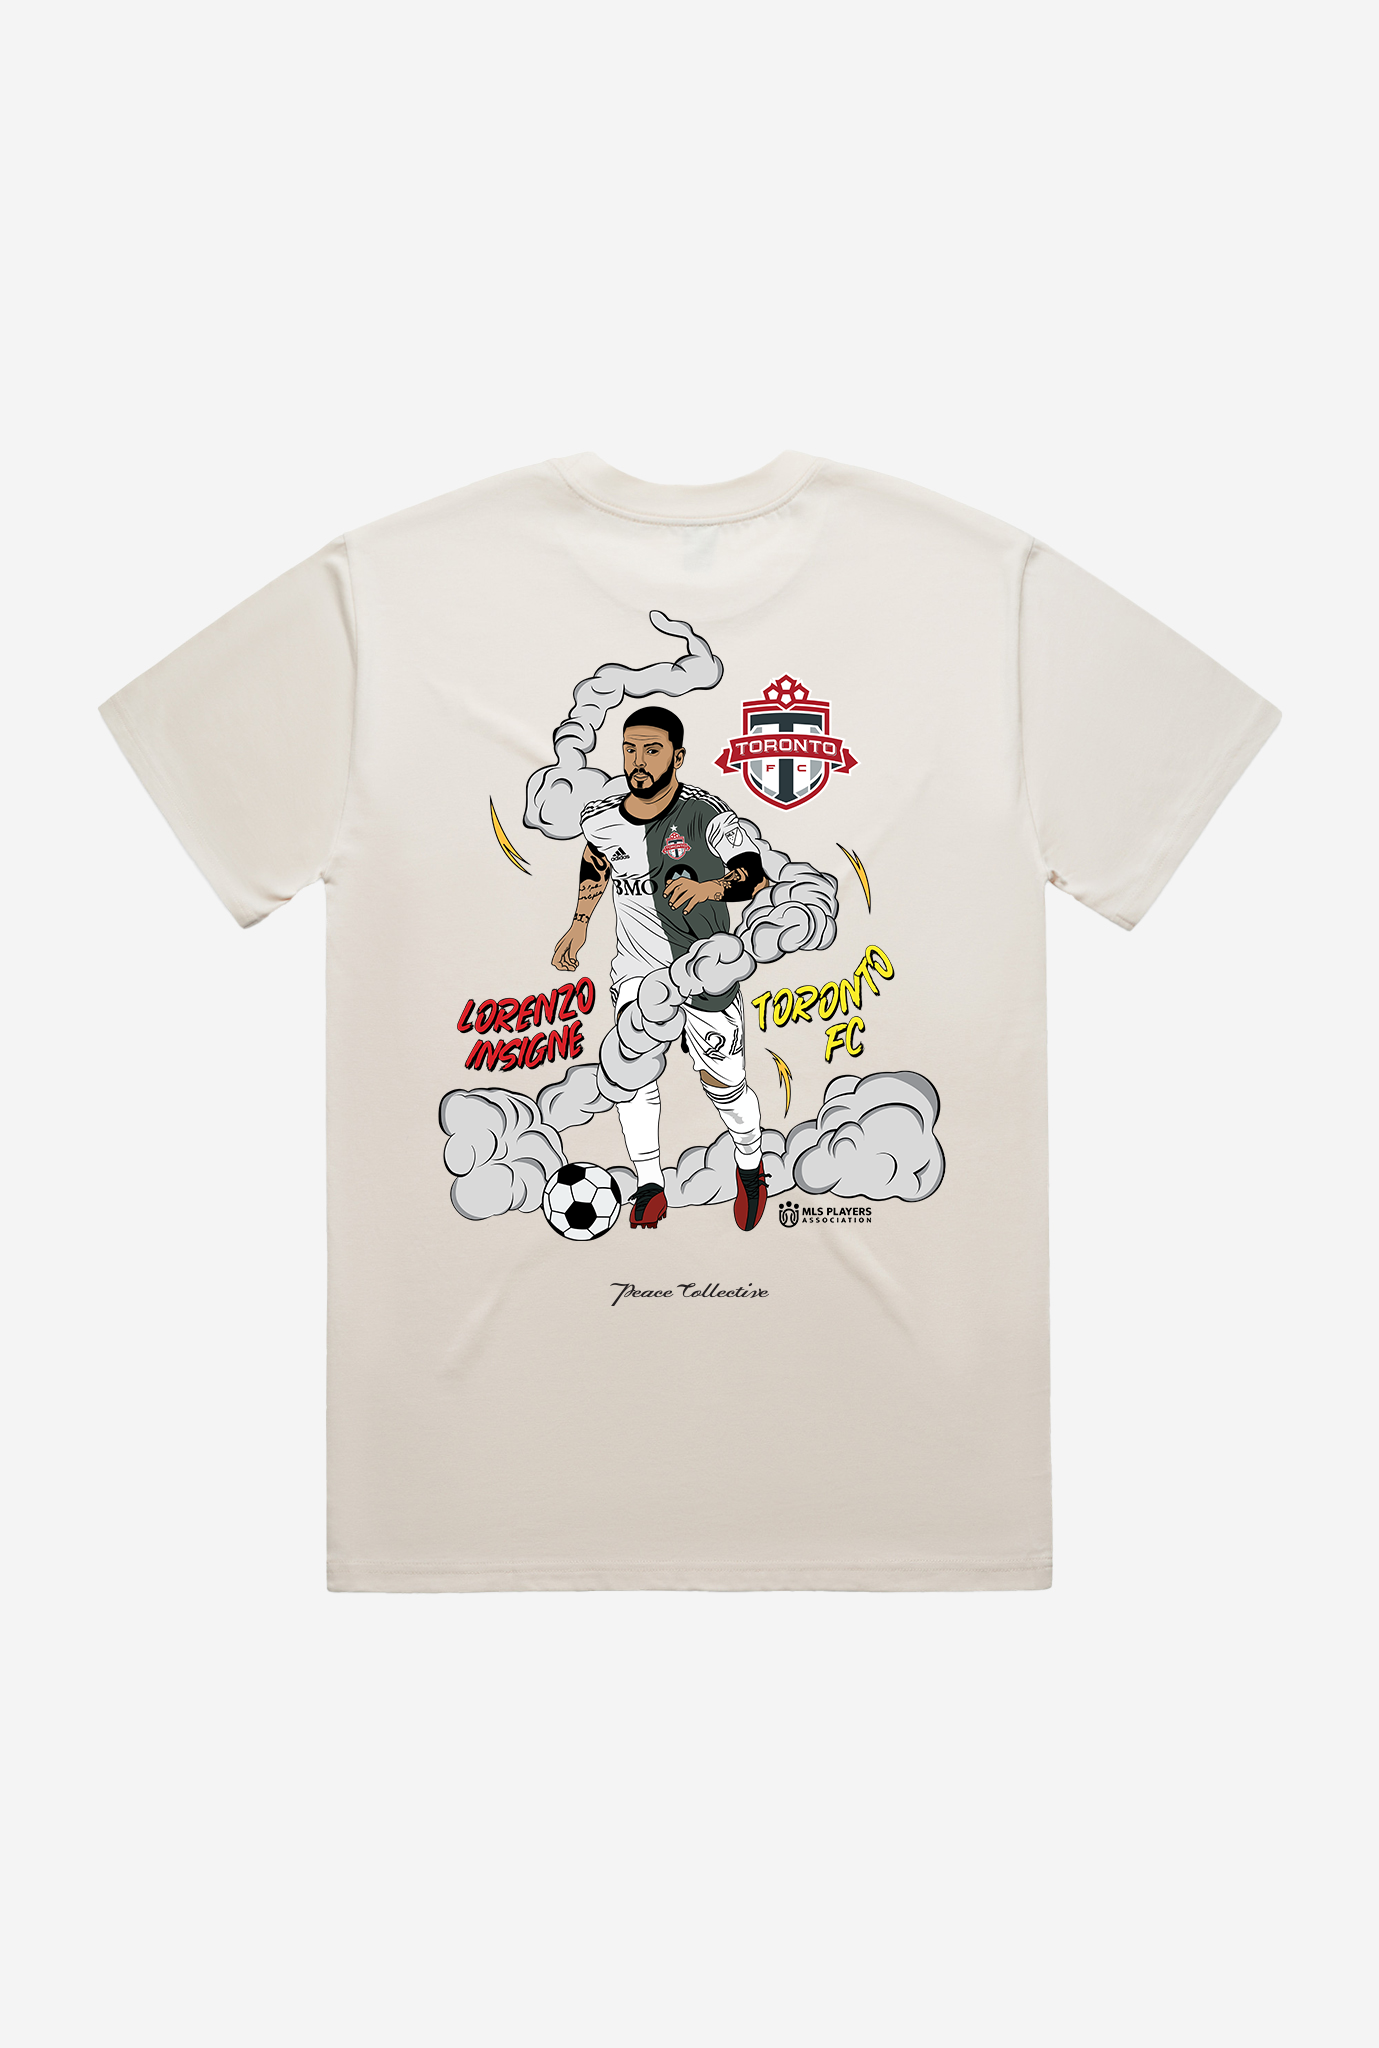 Lorenzo Insigne Player Graphic Premium T-Shirt - Ivory